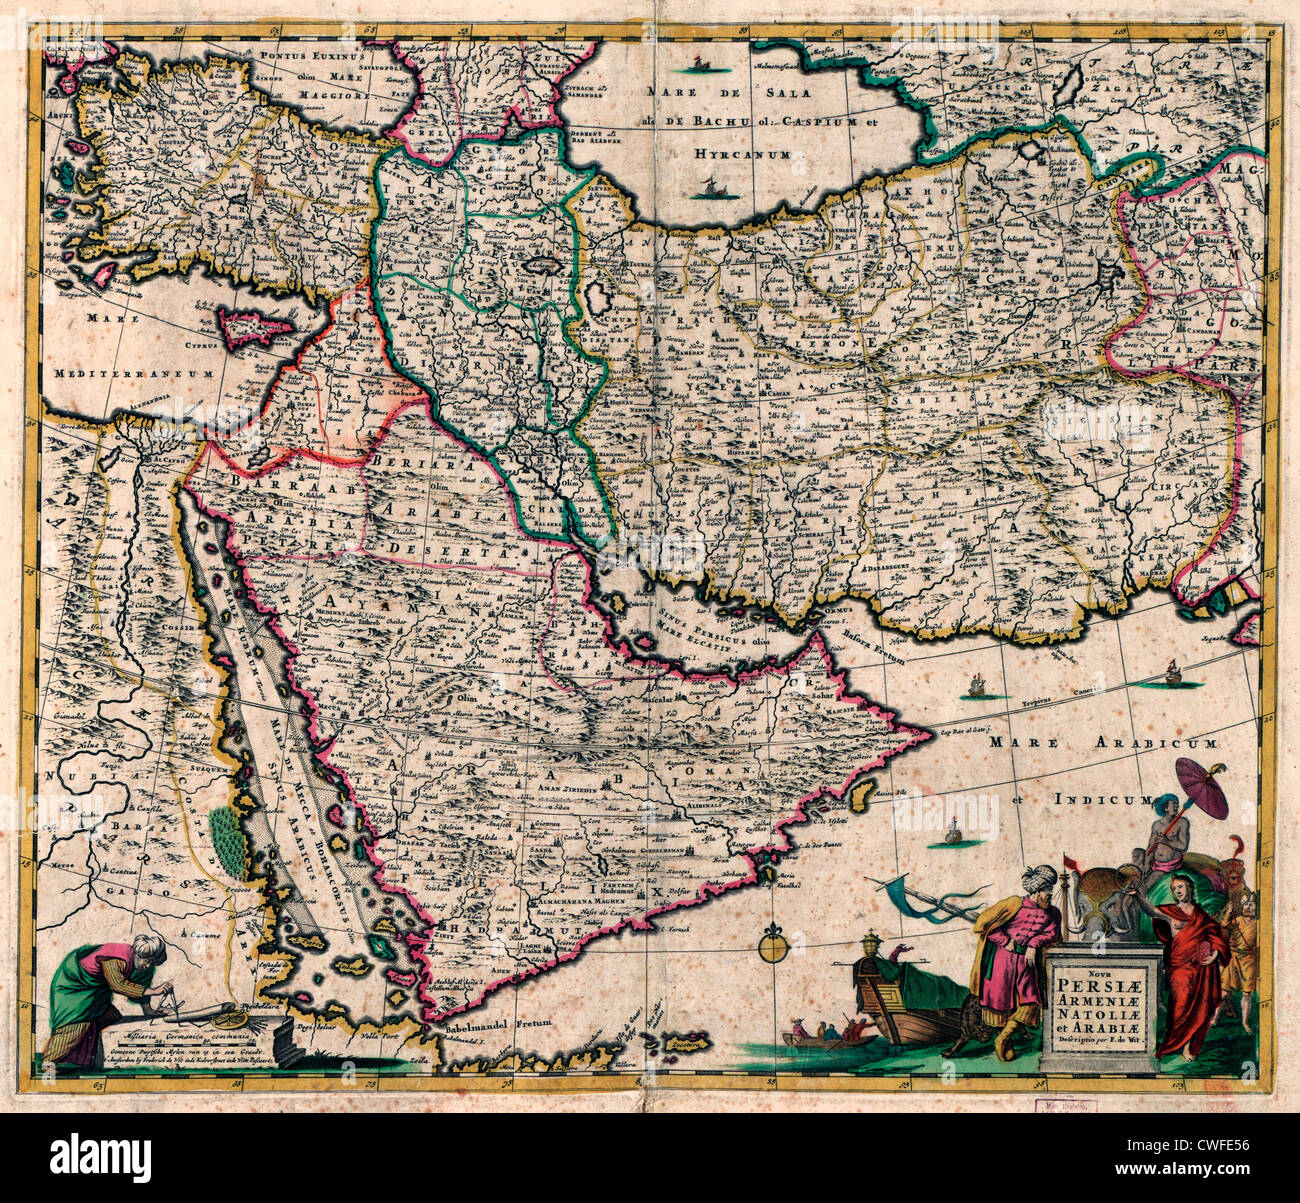 Mappa del Medio Oriente, l'Arabia Saudita, Turchia Egitto, Persia, circa 1666 Foto Stock